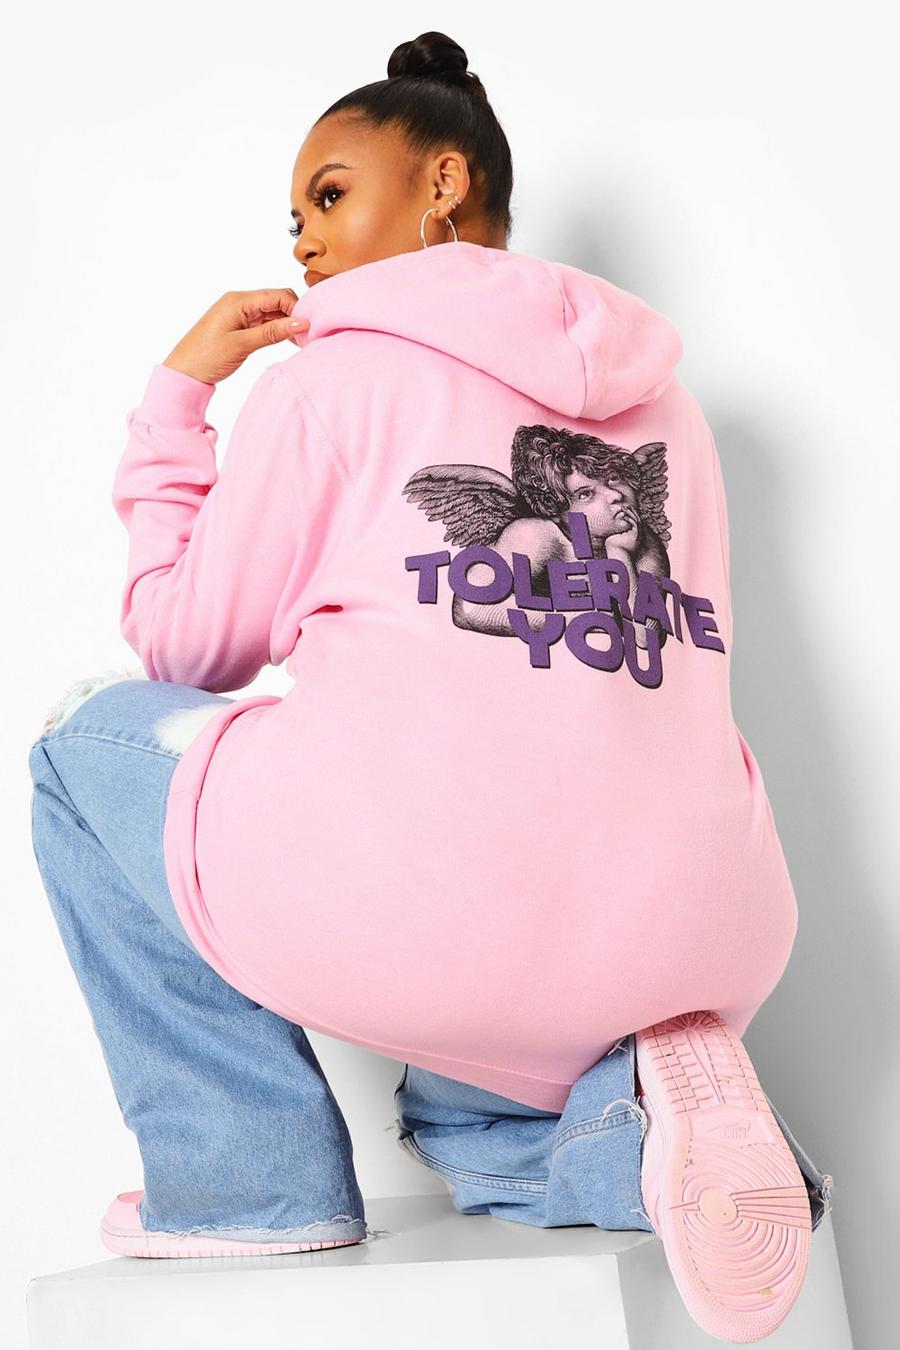 Sudadera con capucha y estampado de eslogan “I Tolerate You” en la espalda Plus, Baby pink image number 1